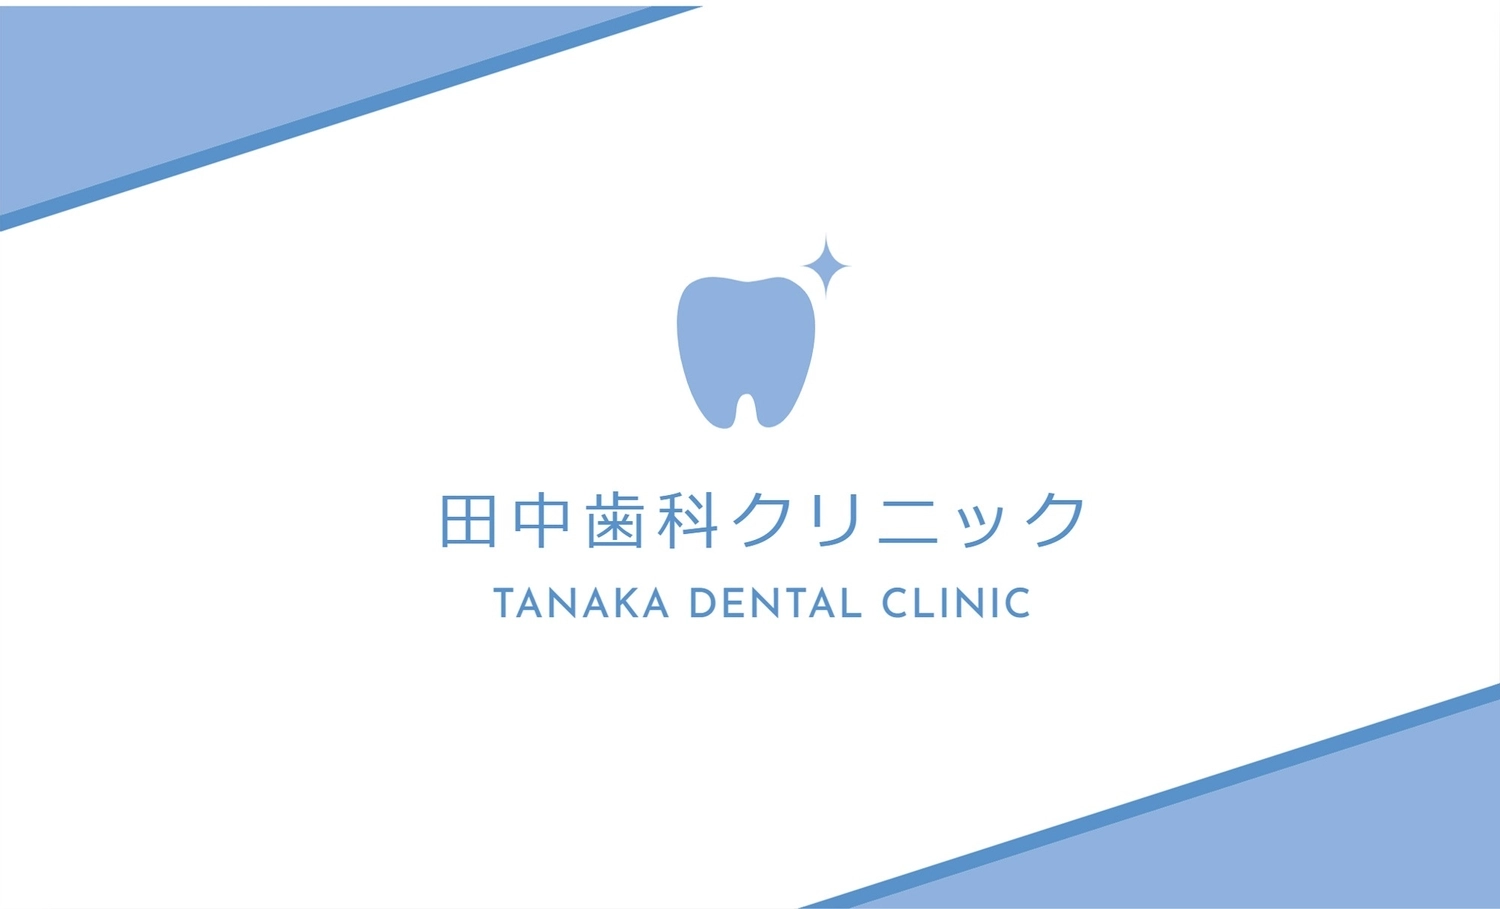 歯科クリニックショップカード, teeth, create, design, Sales promotion tool template